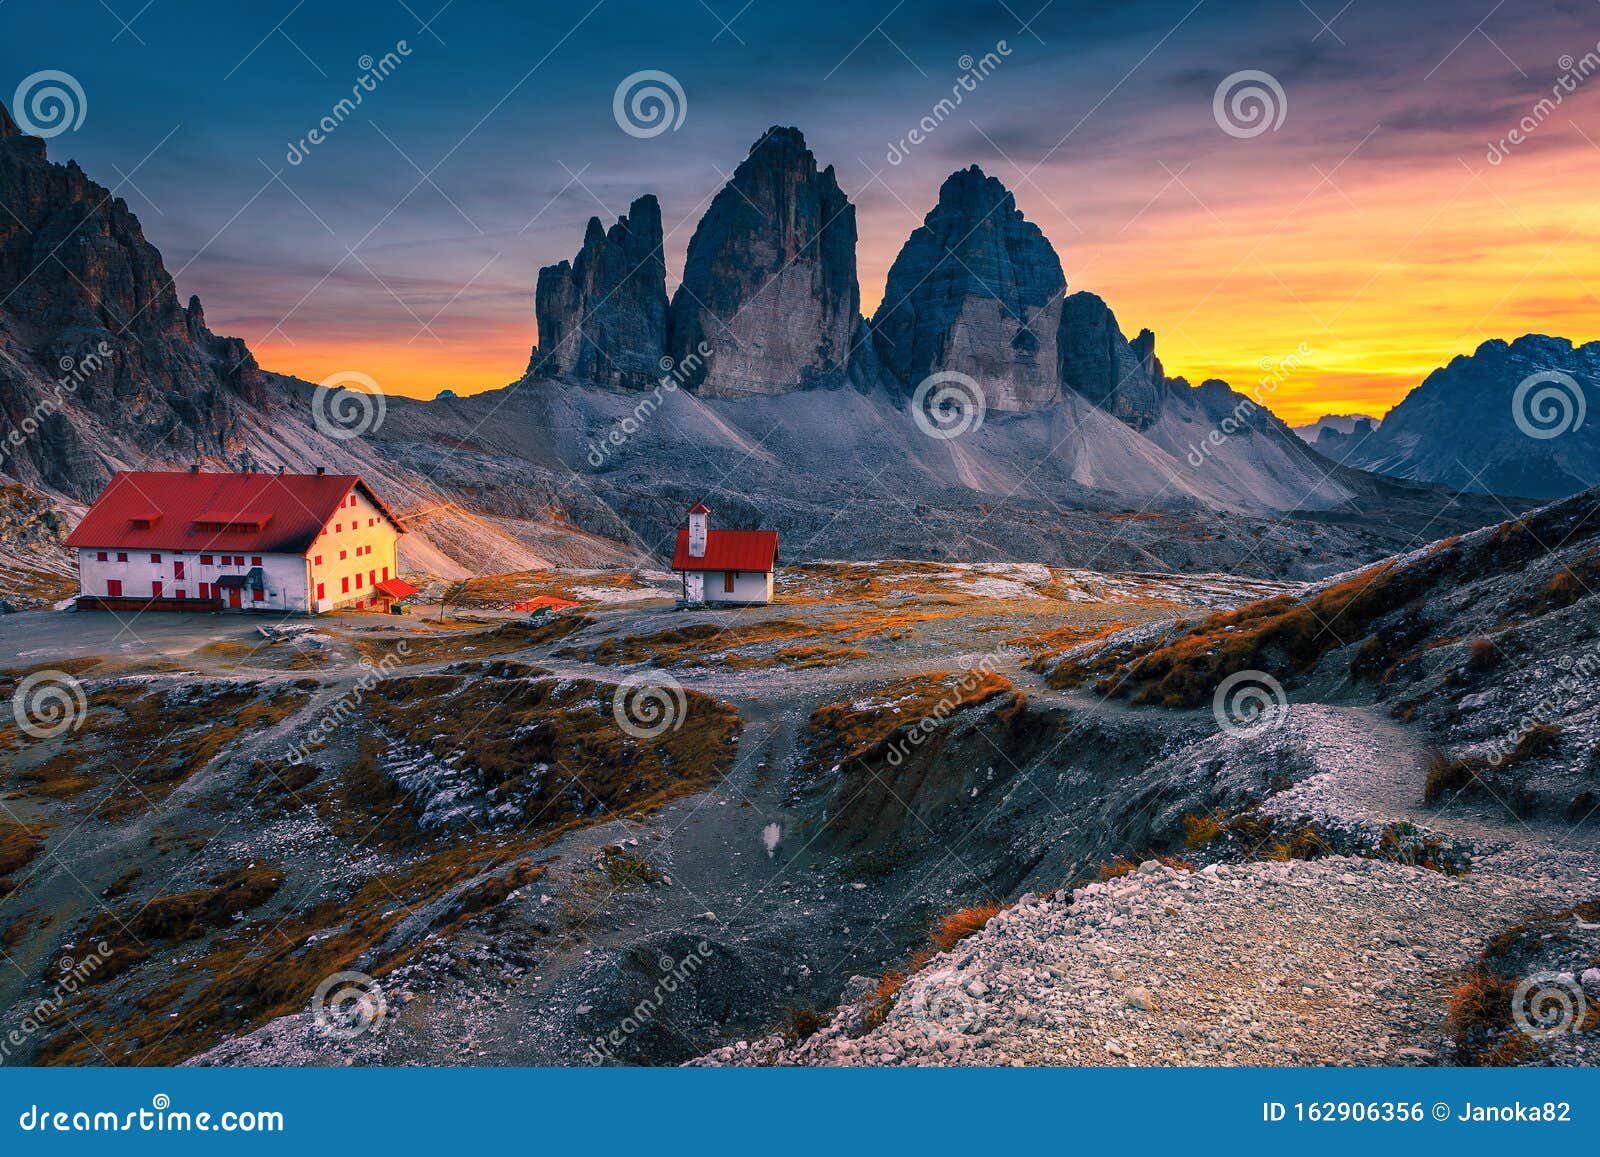 amazing tre cime di lavaredo mountains at sunset, dolomites, italy